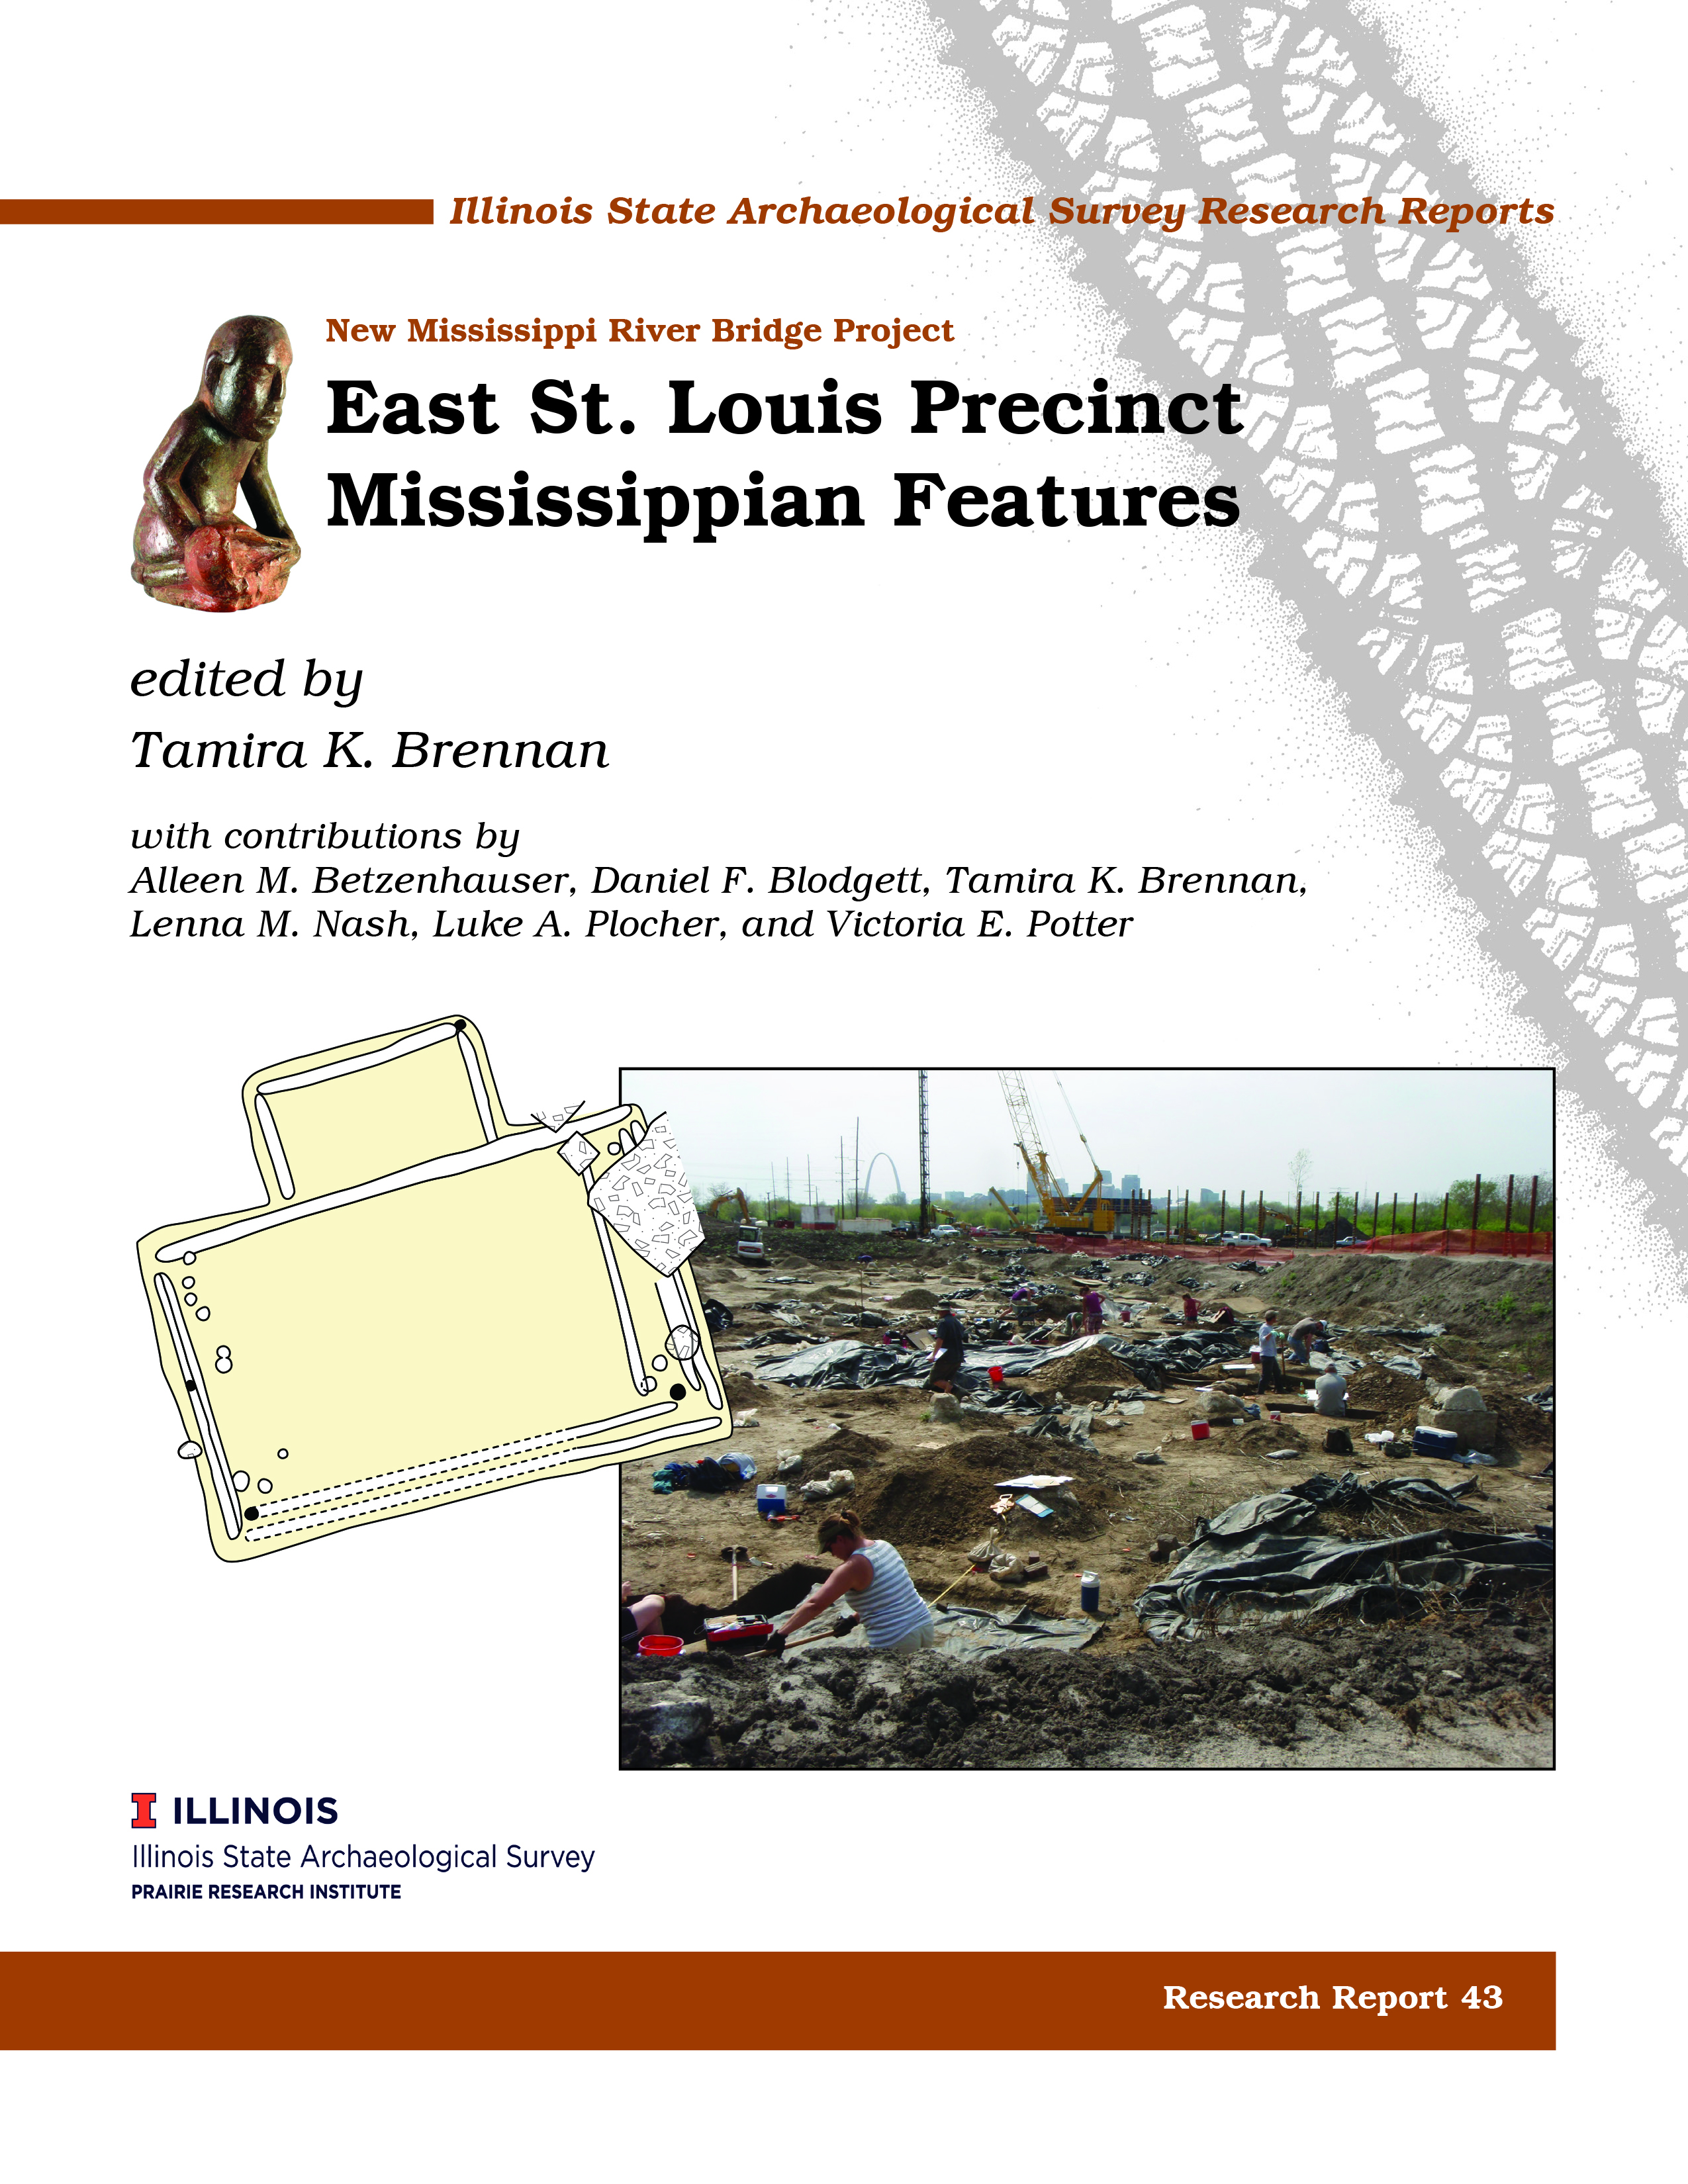 RR 43: ESTL Precinct Mississippian Features